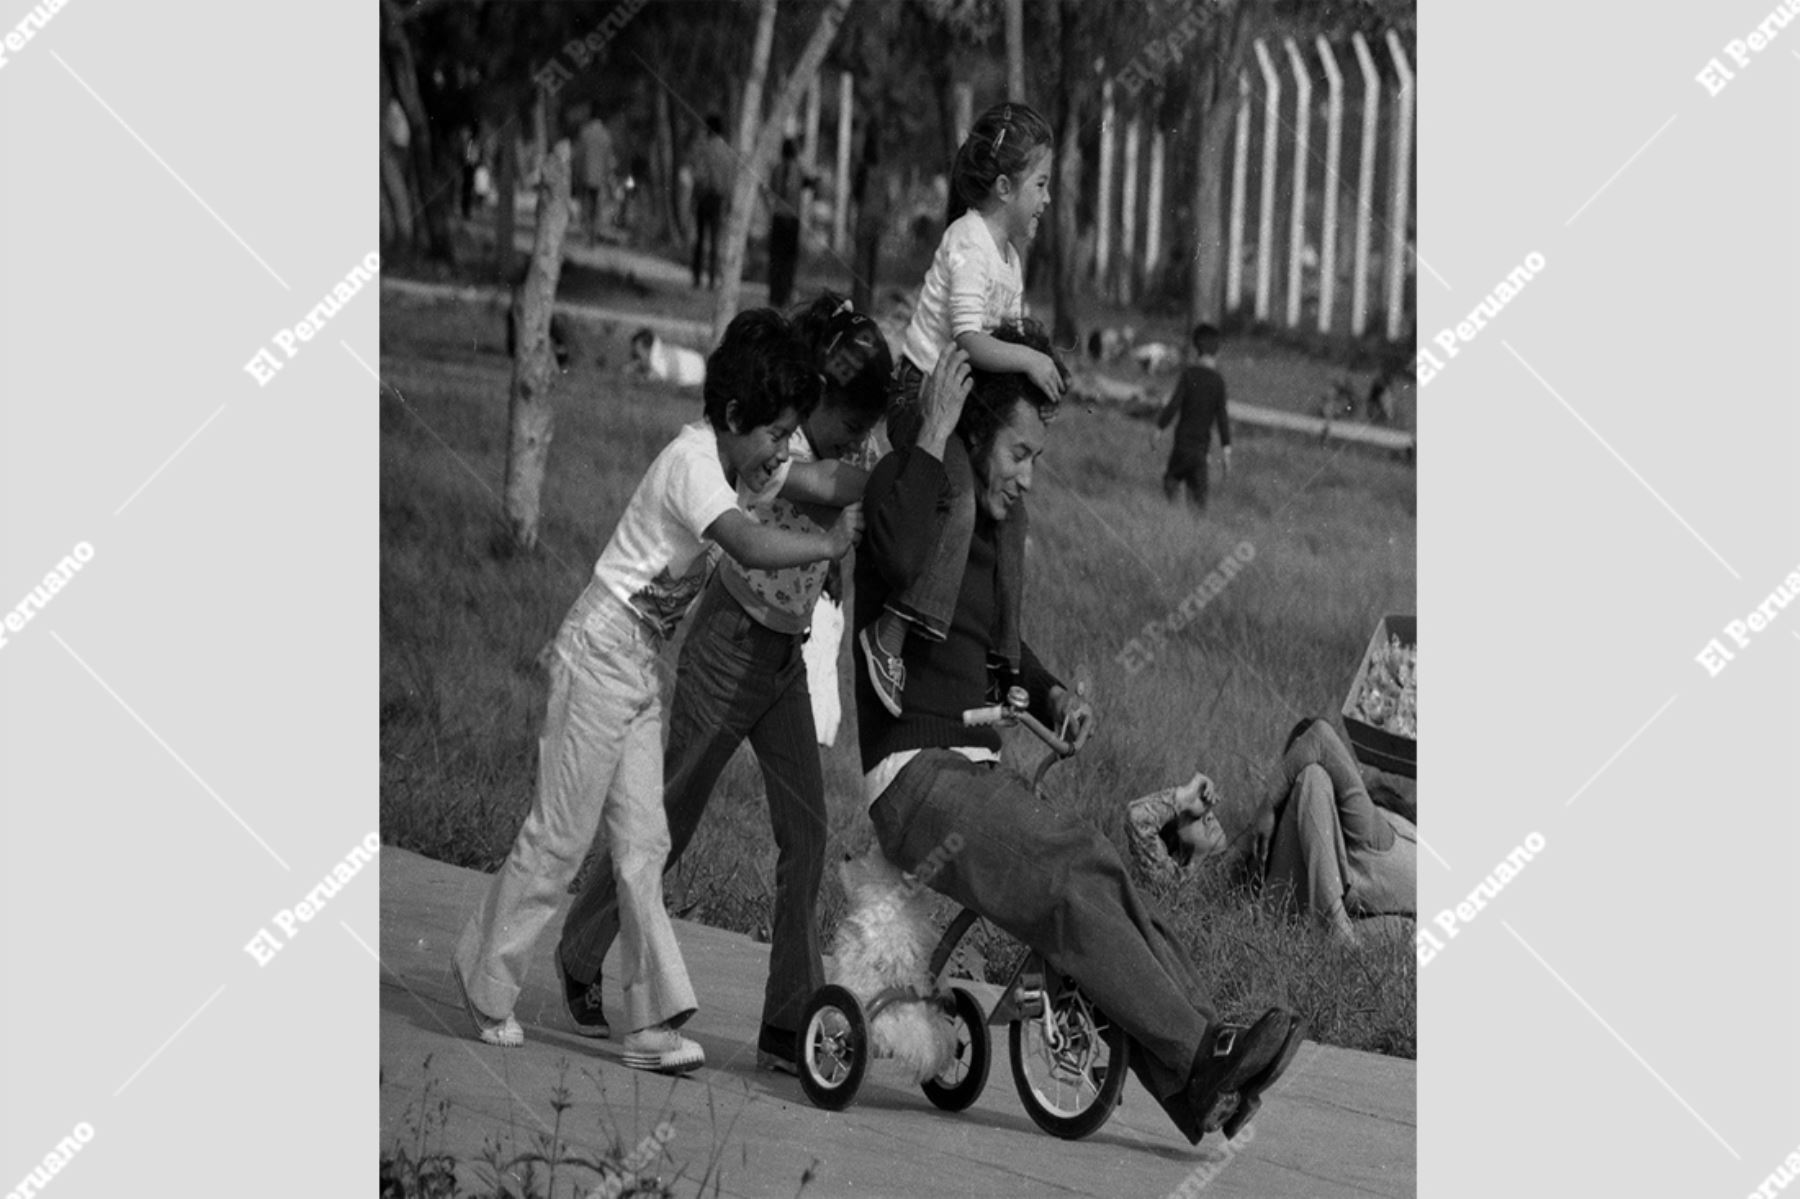 Lima - 2 noviembre 1975 / Padre de familia jugando animadamente con sus menores hijas en un parque del centro de Lima. Foto: Archivo Histórico El Peruano